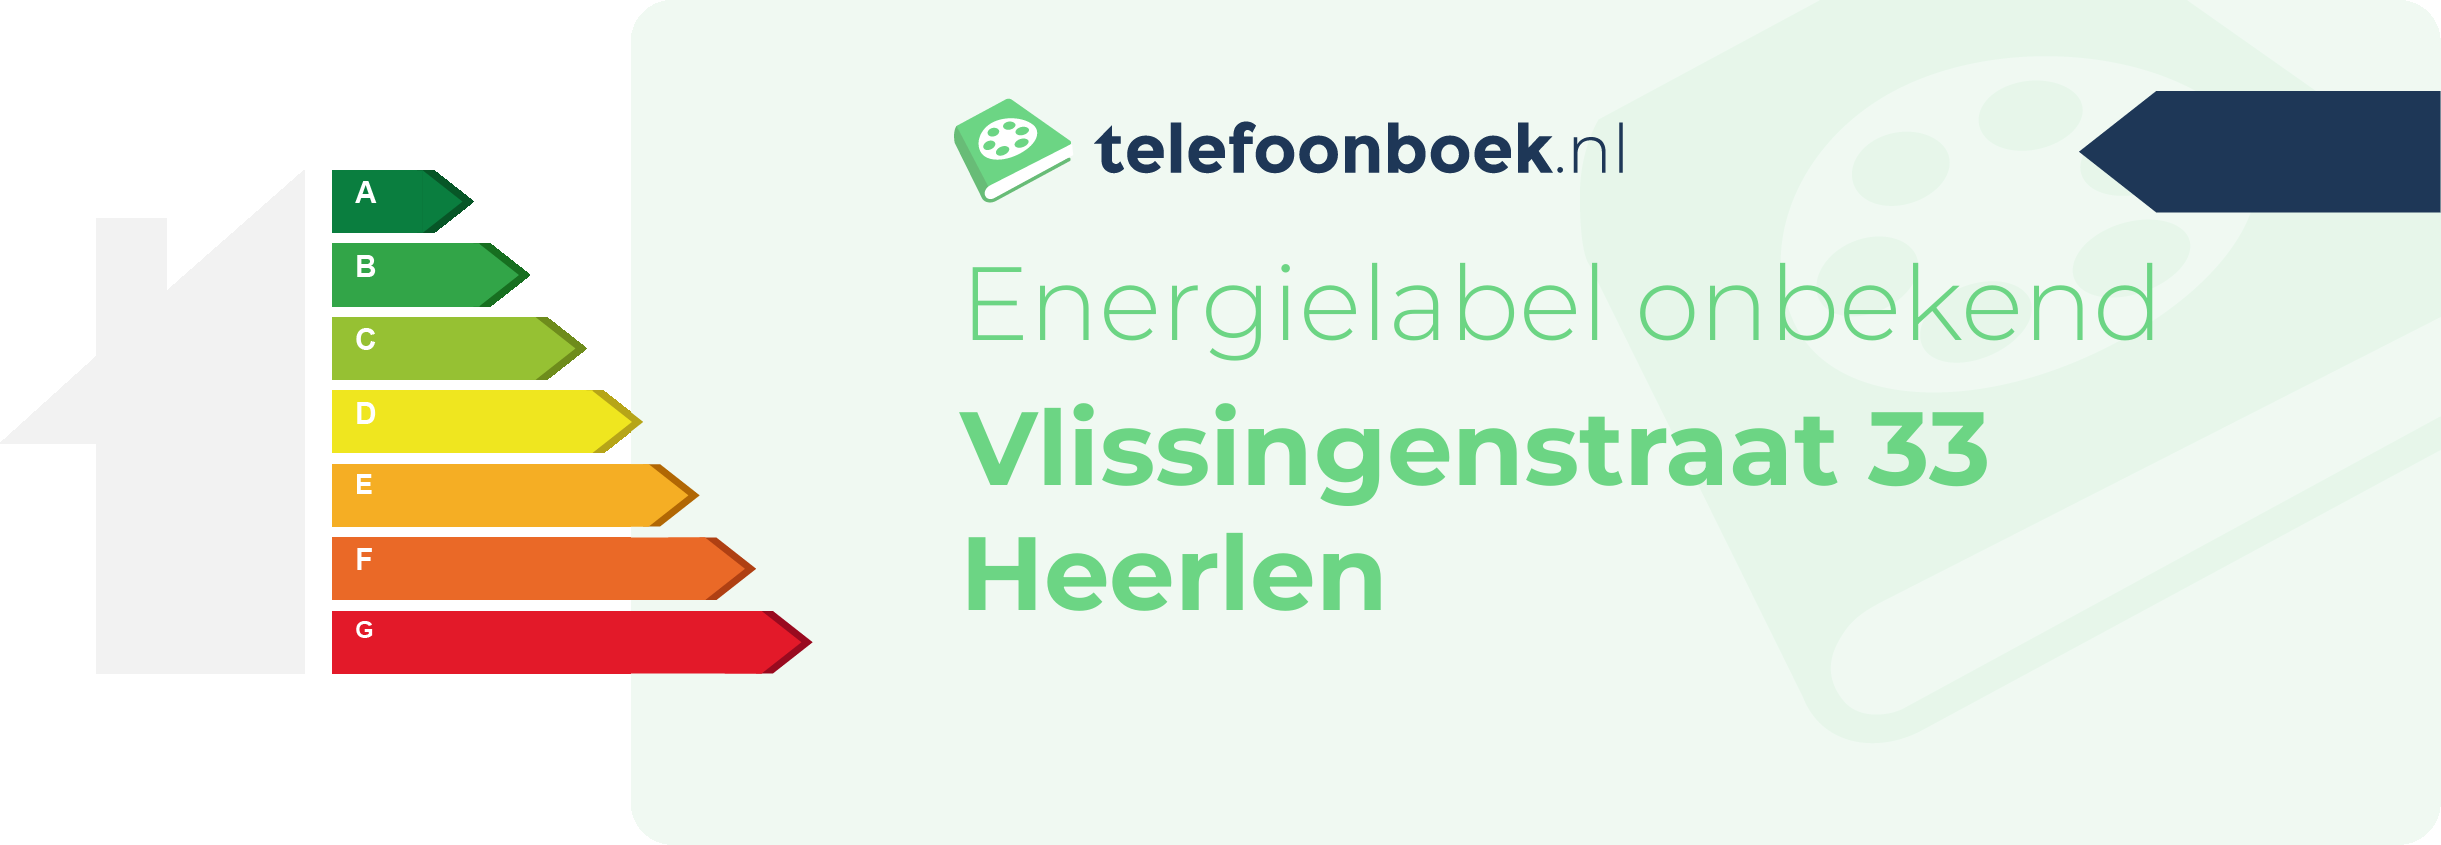 Energielabel Vlissingenstraat 33 Heerlen